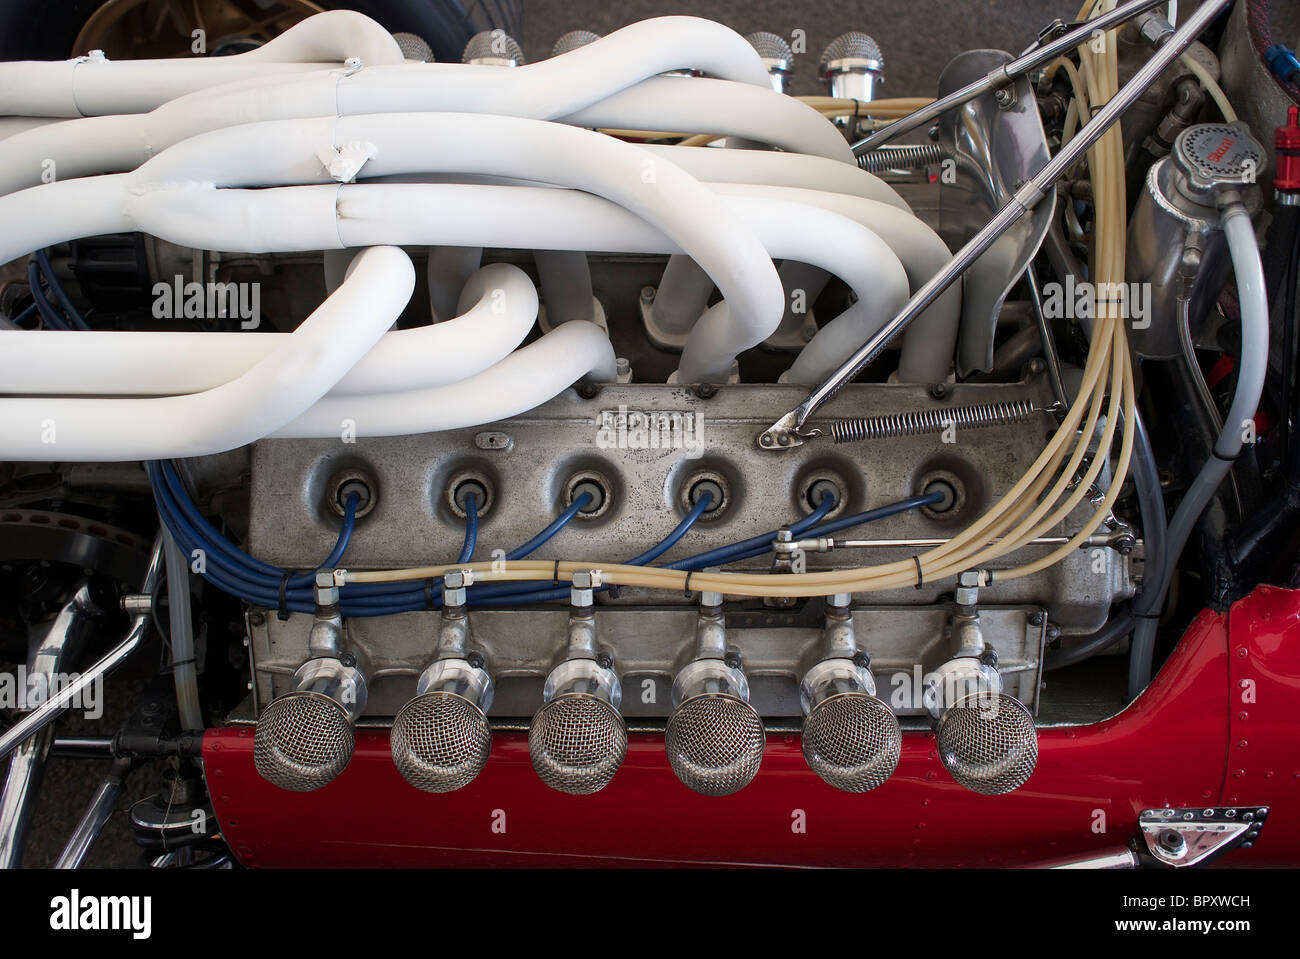 Old Ferrari V12 engine Stock Photo